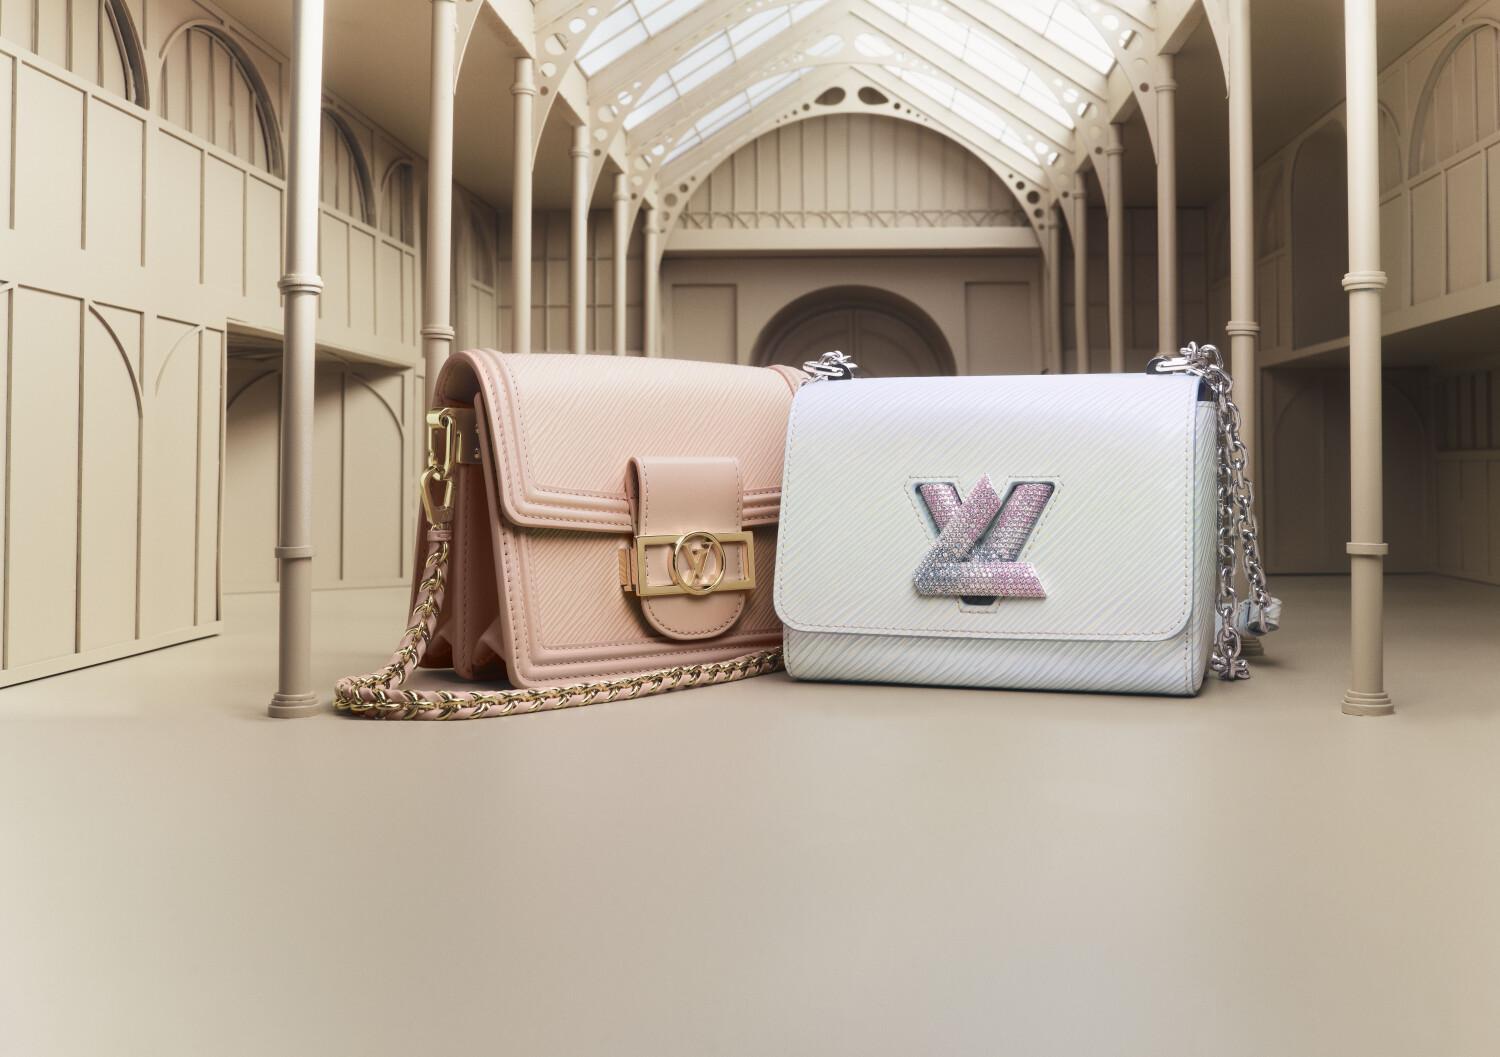 Louis Vuitton giới thiệu vũ trụ quà tặng đa sắc màu cho mùa lễ hội - Ảnh 3.